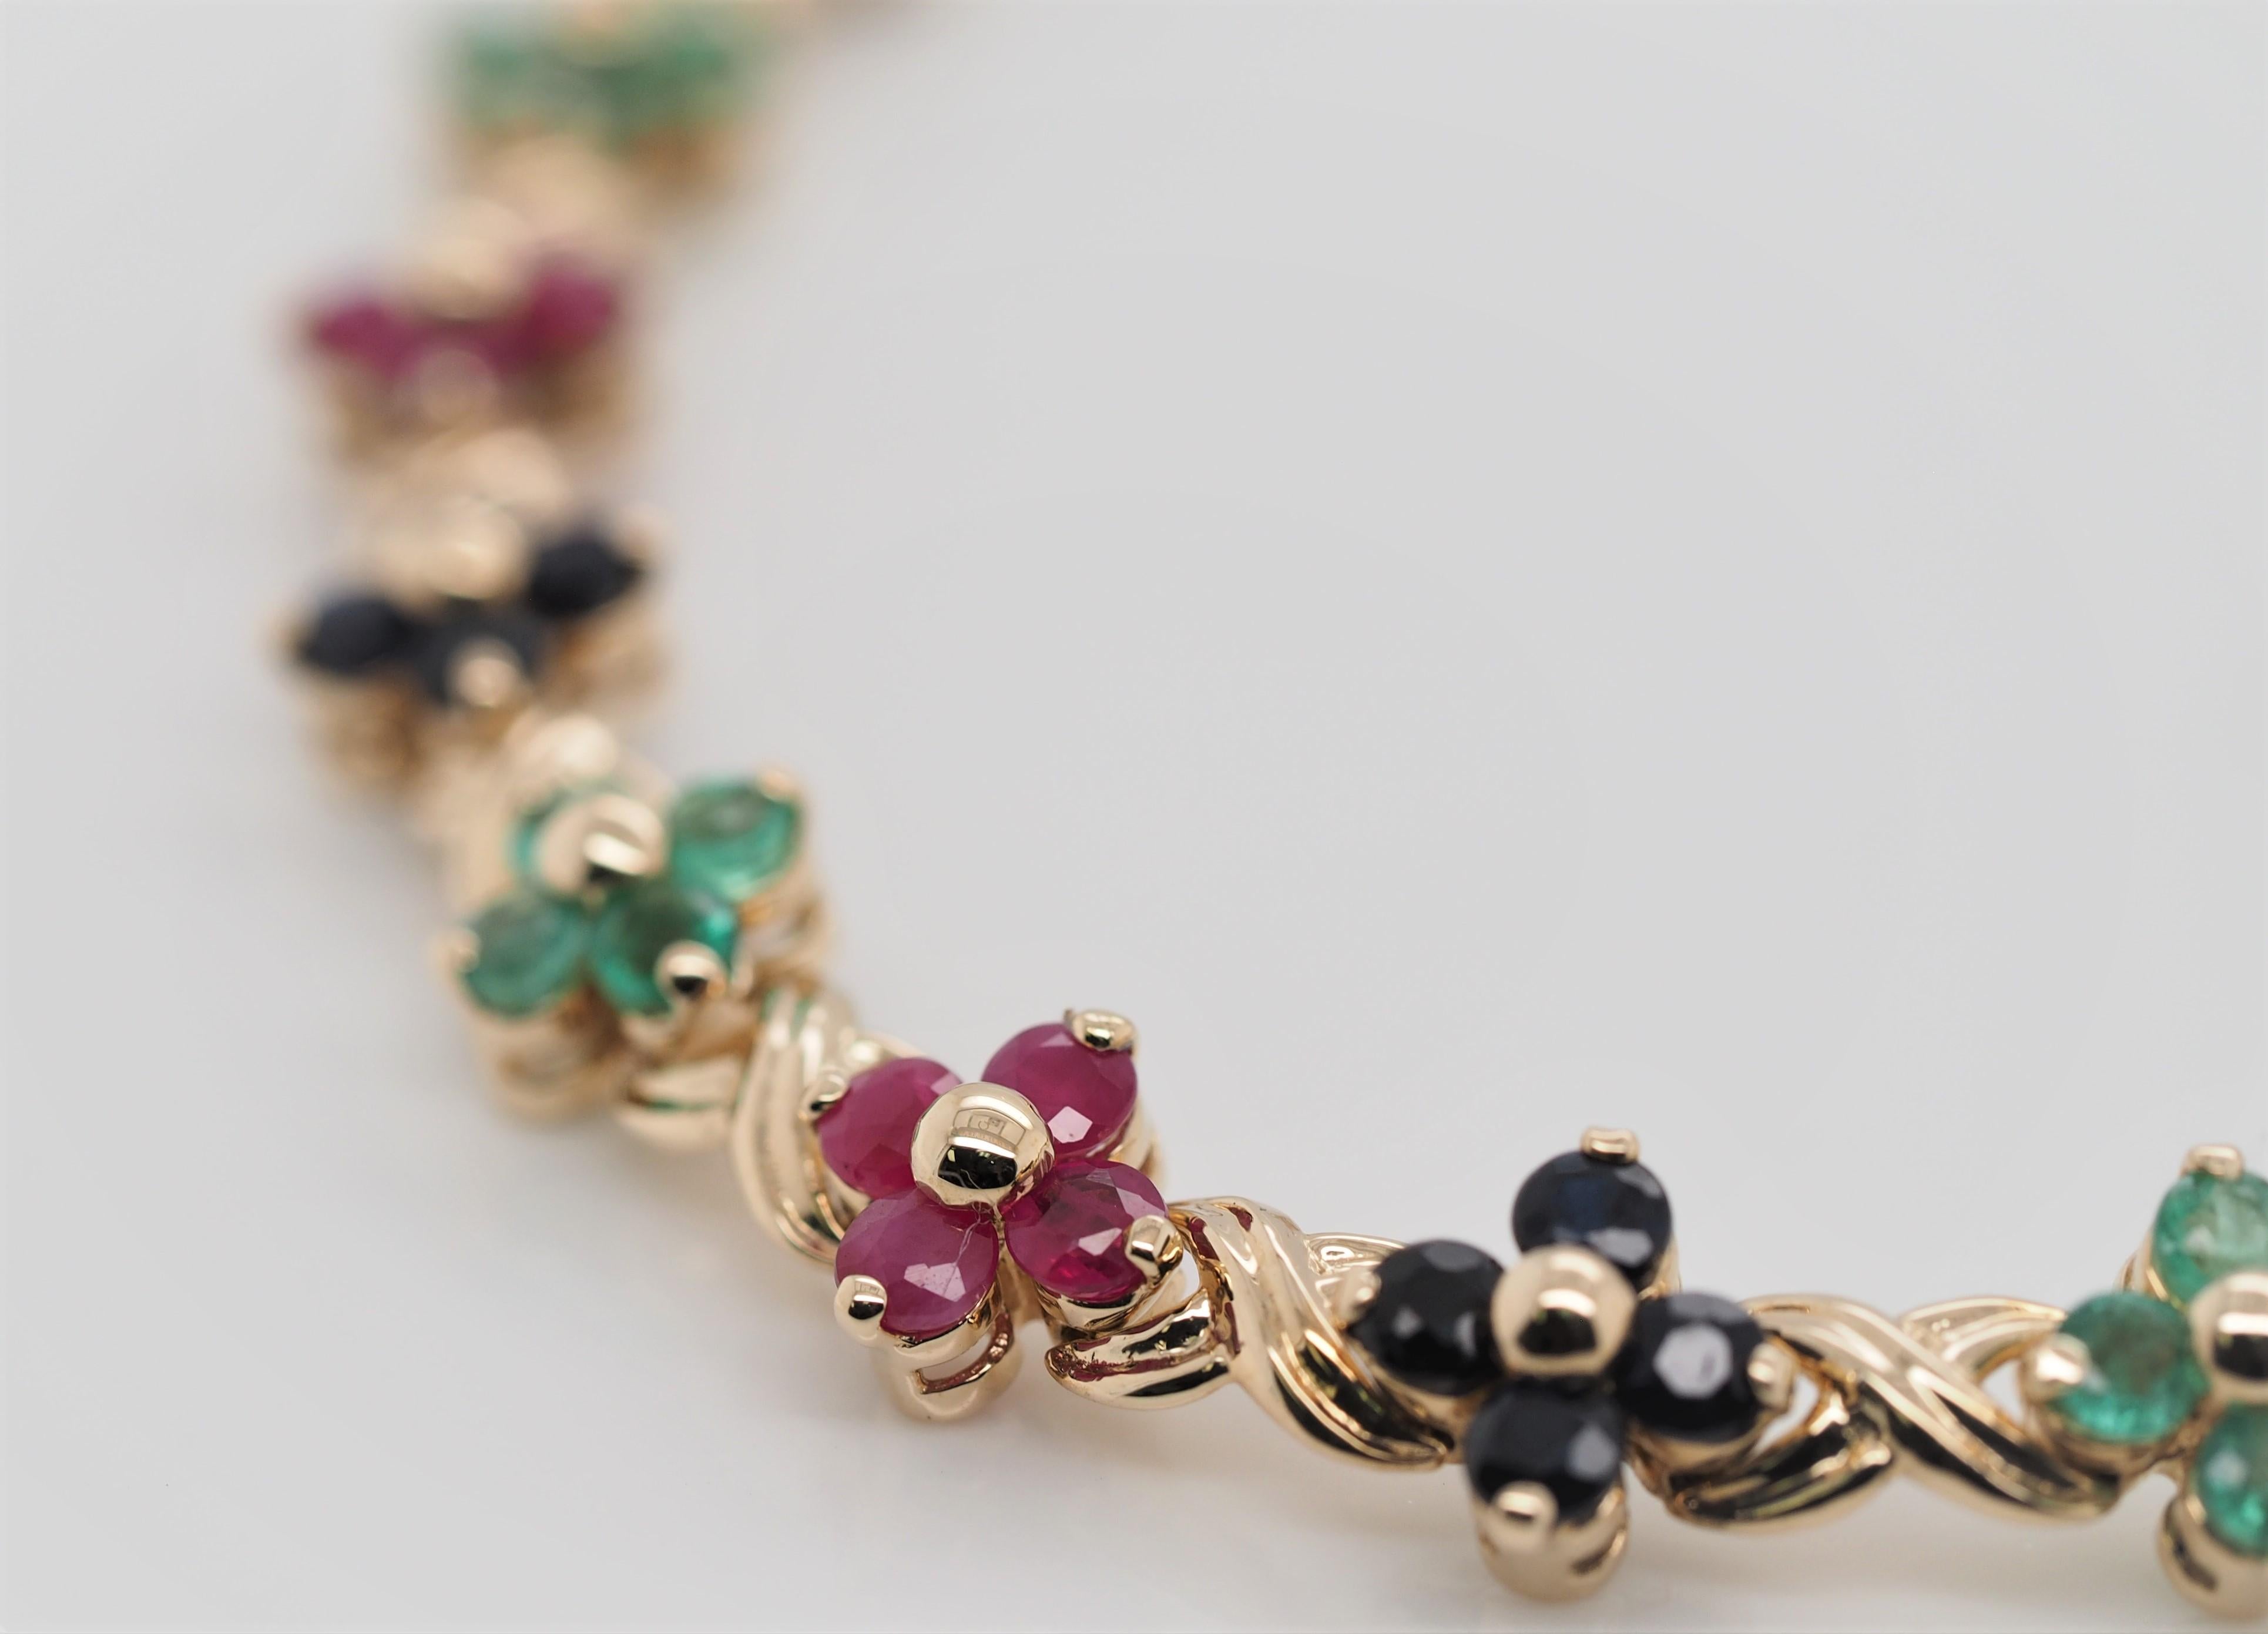 Bracelet à maillons en or jaune 14 carats avec saphirs bleus, rubis rouges et émeraudes vertes.
Le bracelet mesure 7